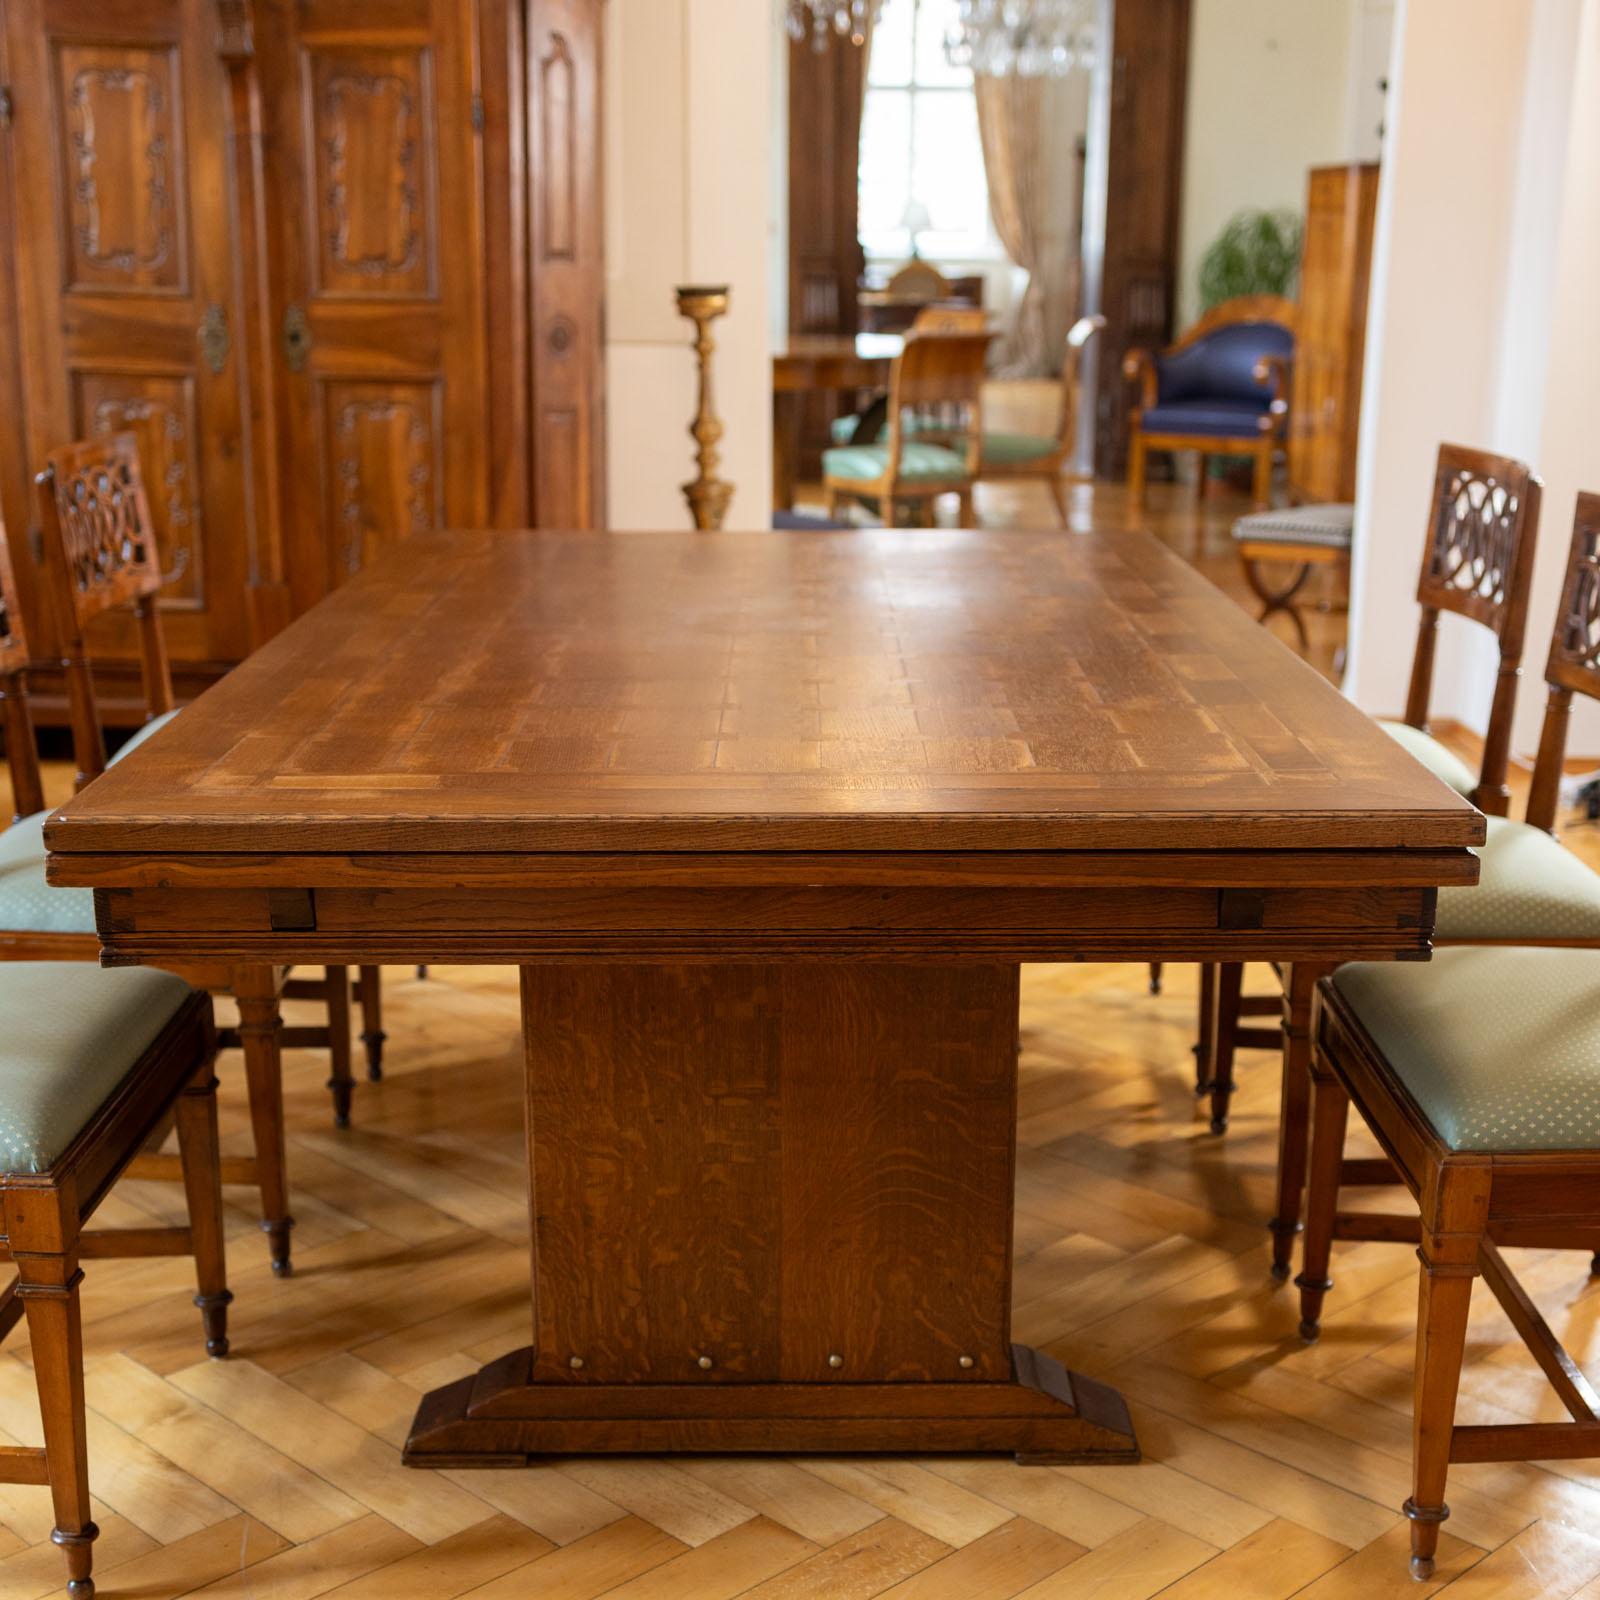 Grande table à rallonge Art Nouveau en chêne avec un plateau rectangulaire et deux surfaces coulissantes sur les côtés étroits. Les plateaux de table présentent un magnifique motif de parquet. La longueur maximale est de 360 cm. La table repose sur